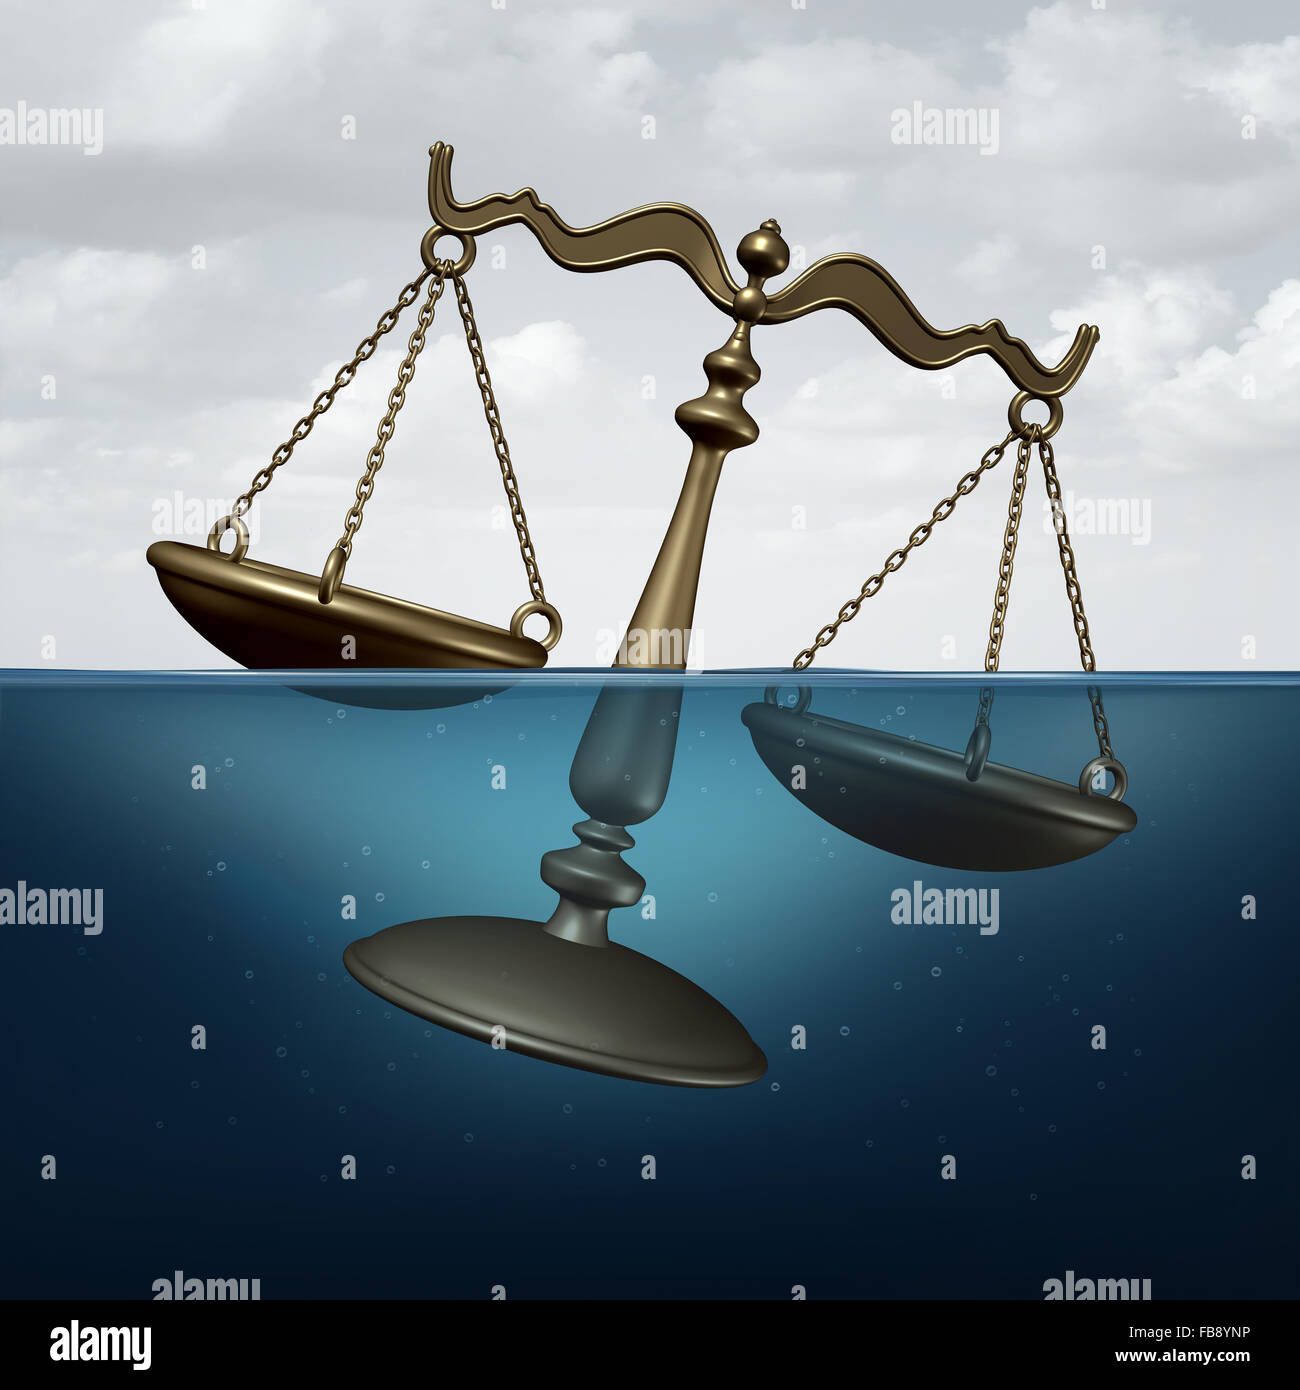 Le concept juridique de la justice ou le symbole des problèmes comme une échelle de la justice se noyer dans l'eau comme métaphore de la loi ou le règlement des problèmes. Banque D'Images